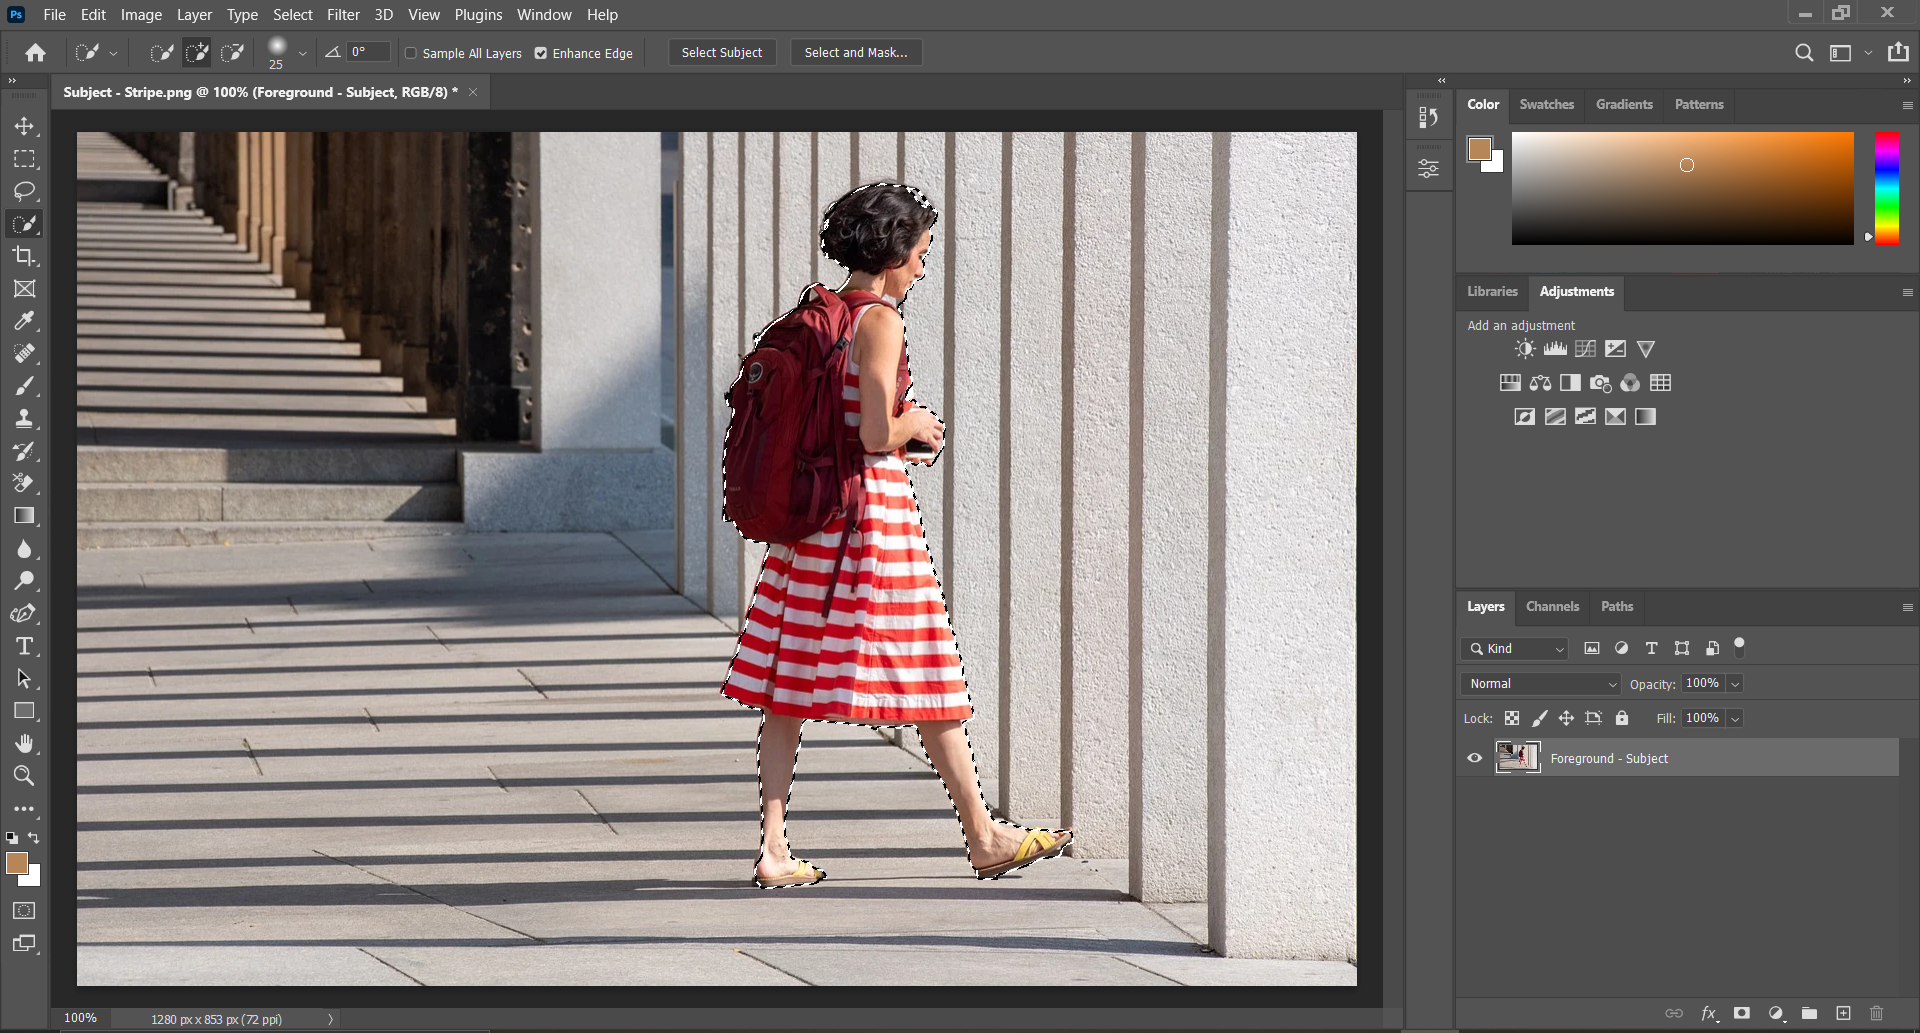 Photoshop screen showing woman walking